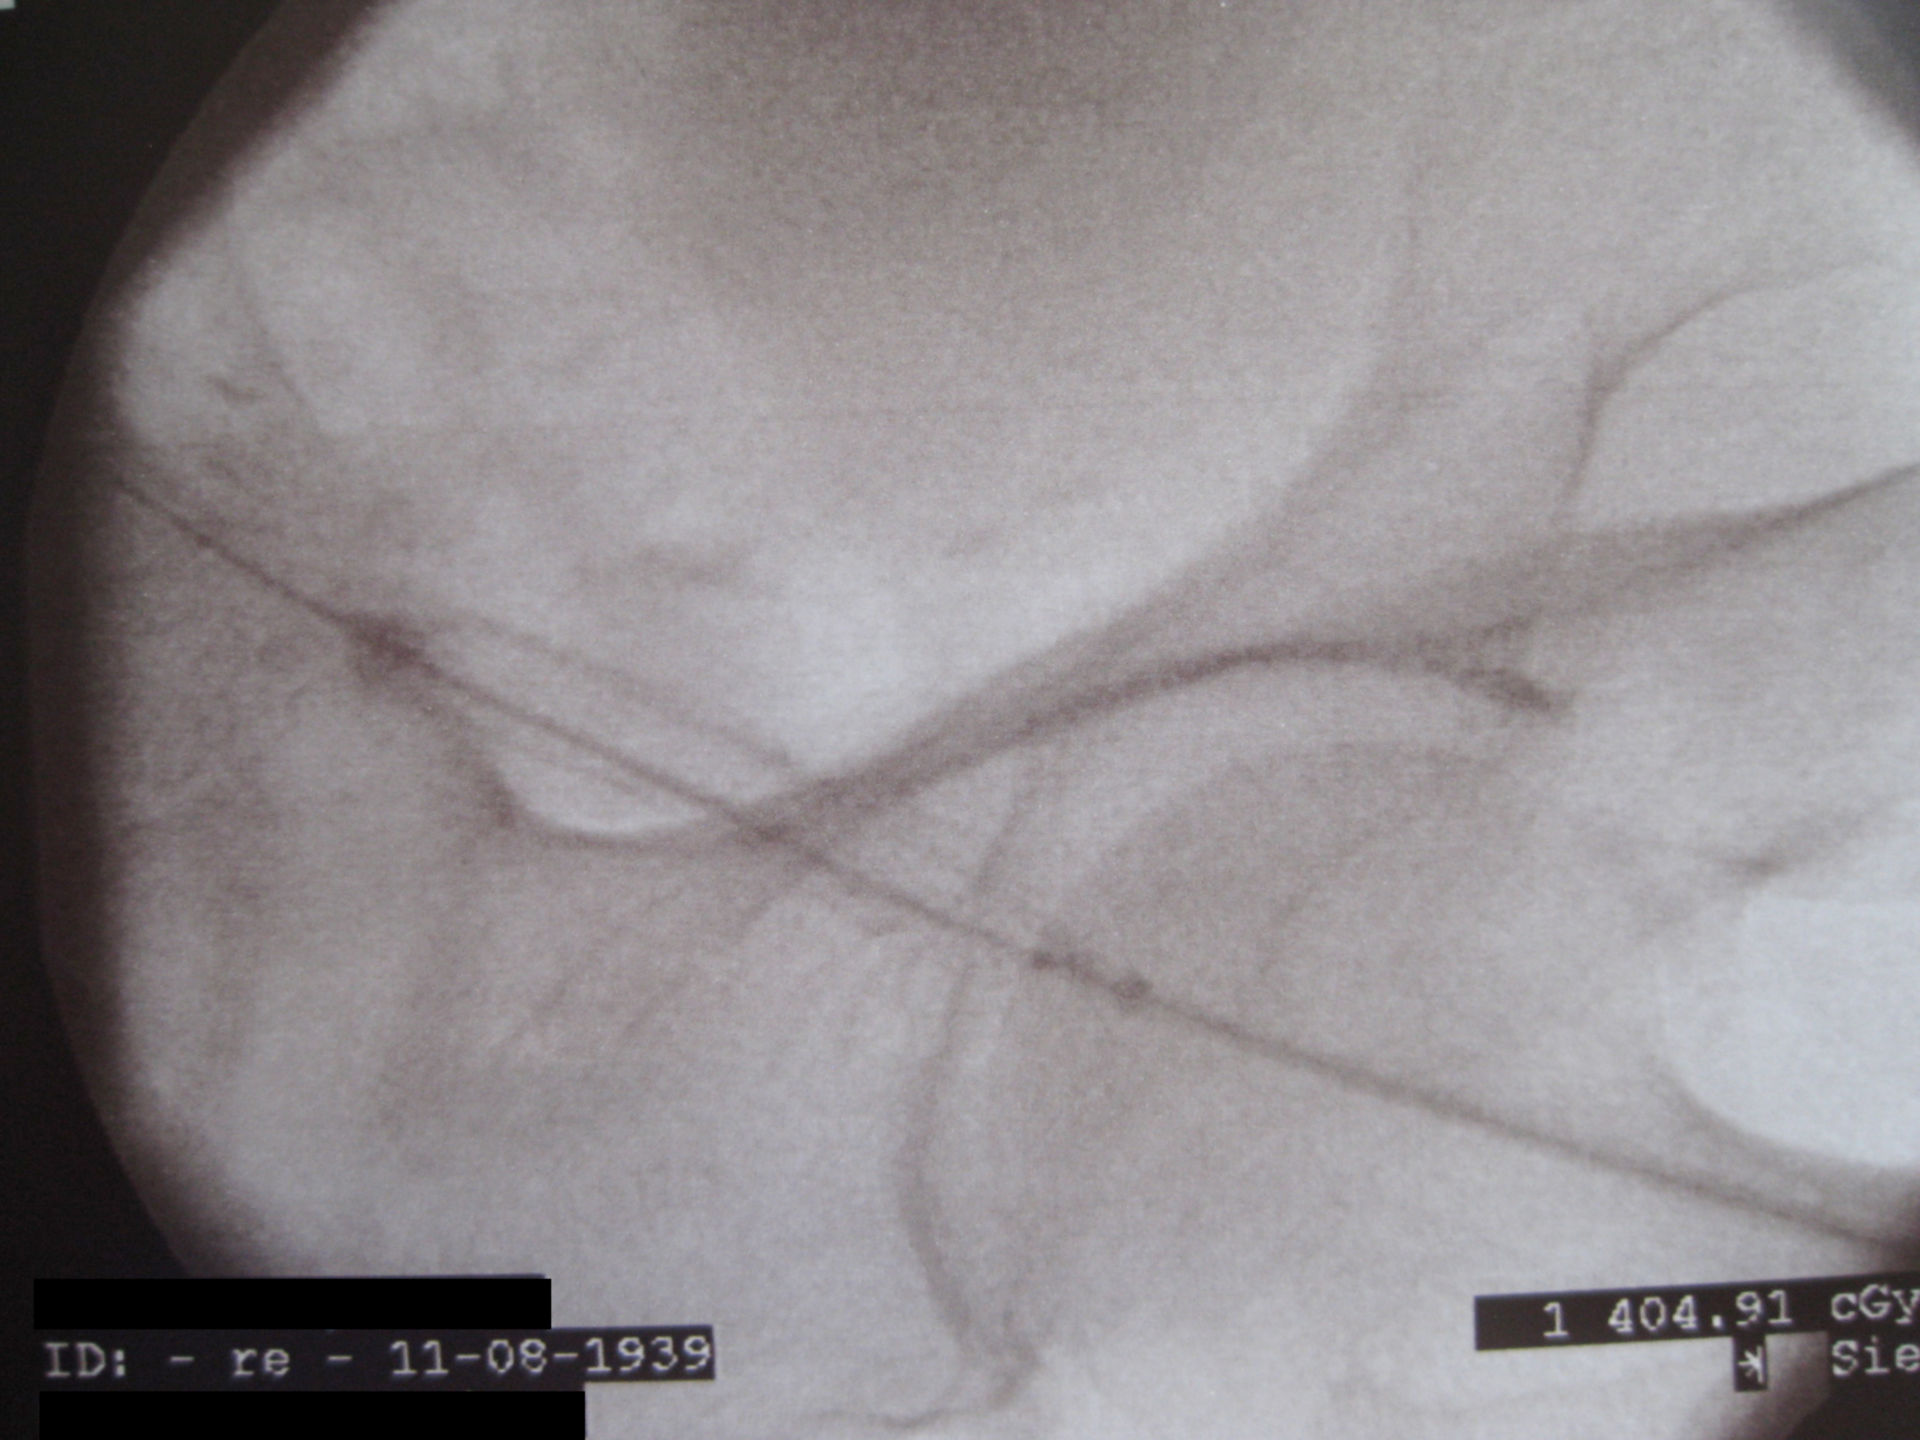 PTA der Beckenarterie mit Stenteinlage 8 mm